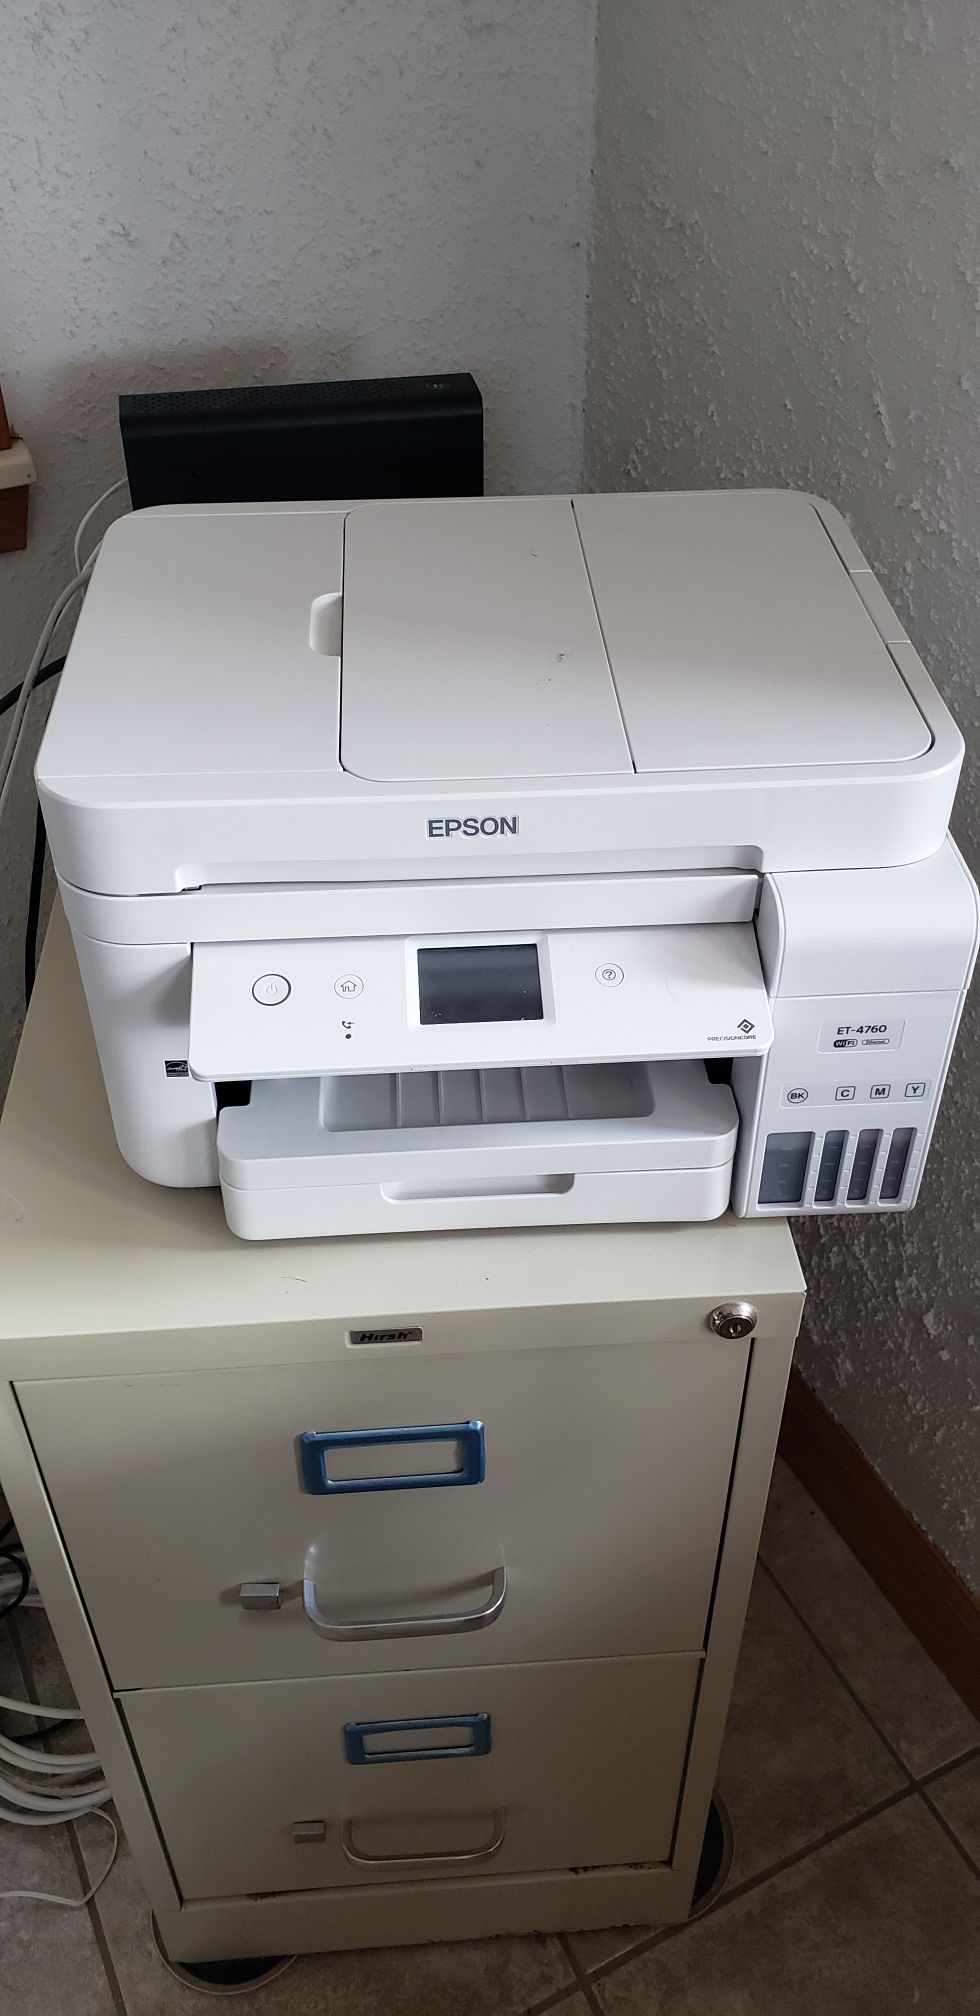 Epson ET 4760 Printer